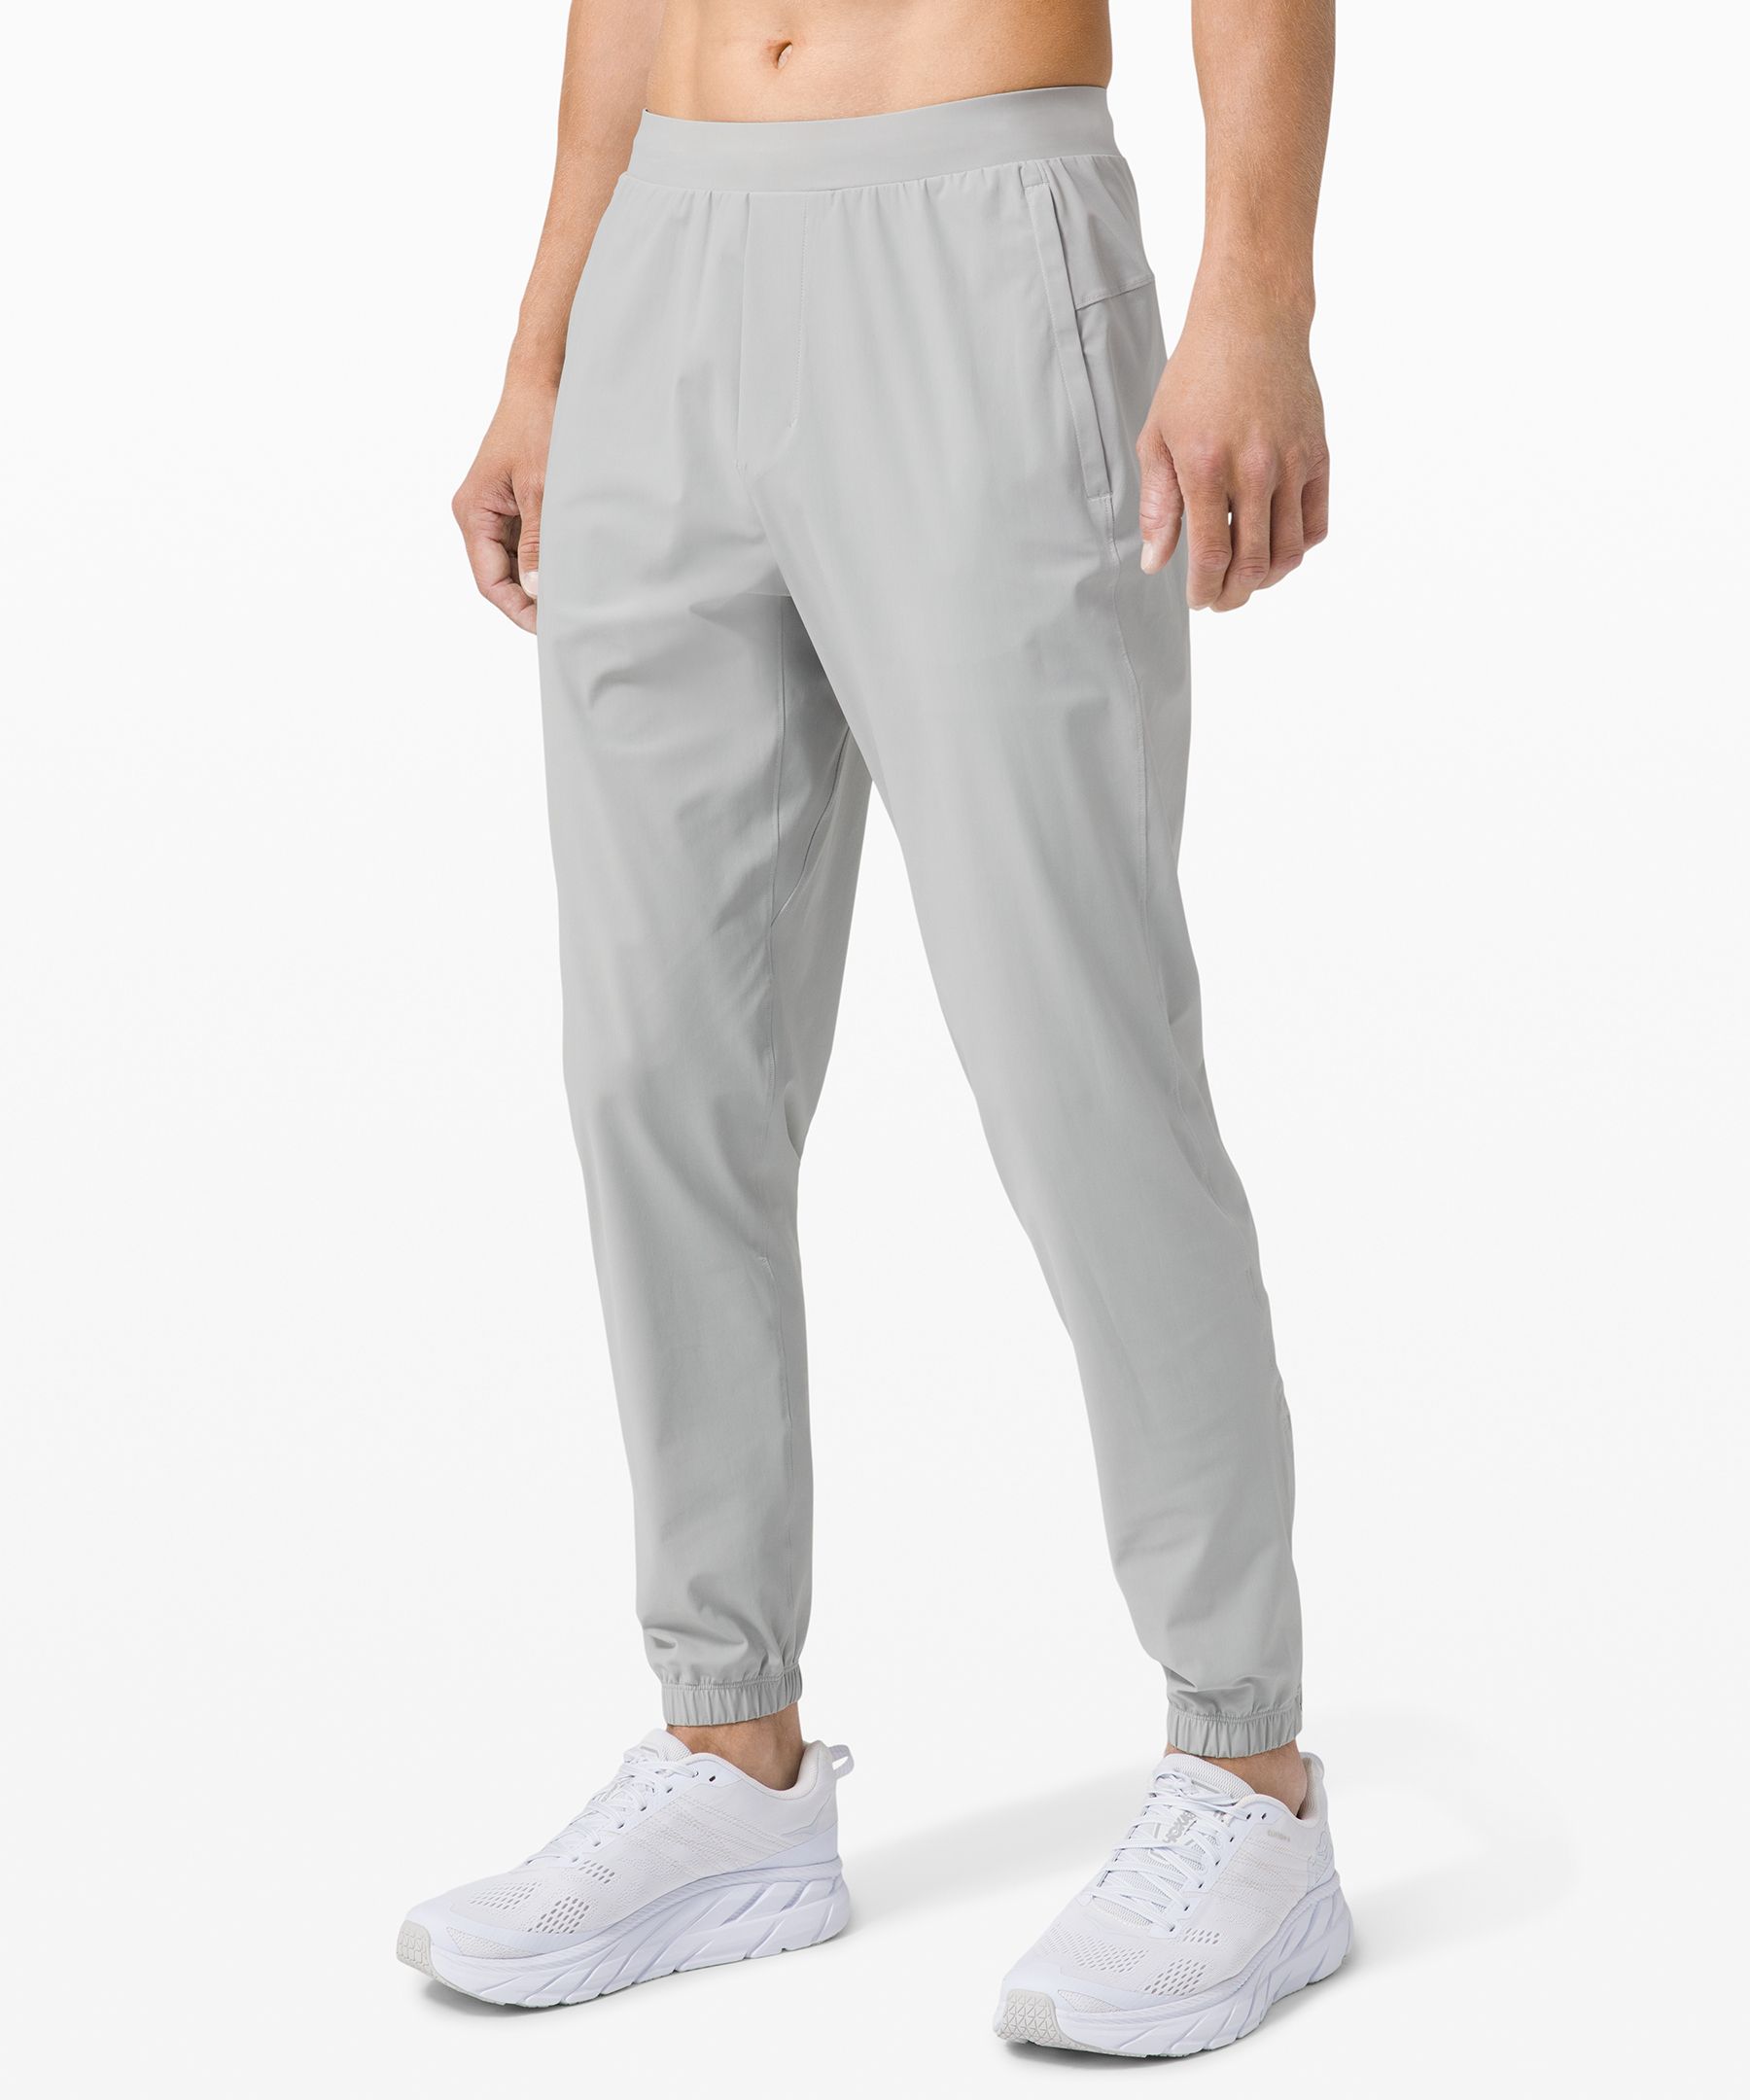 Lululemon Surge Jogger Color Graphite Grey Size L, - Lululemon clothing  Surge - graphite Grey